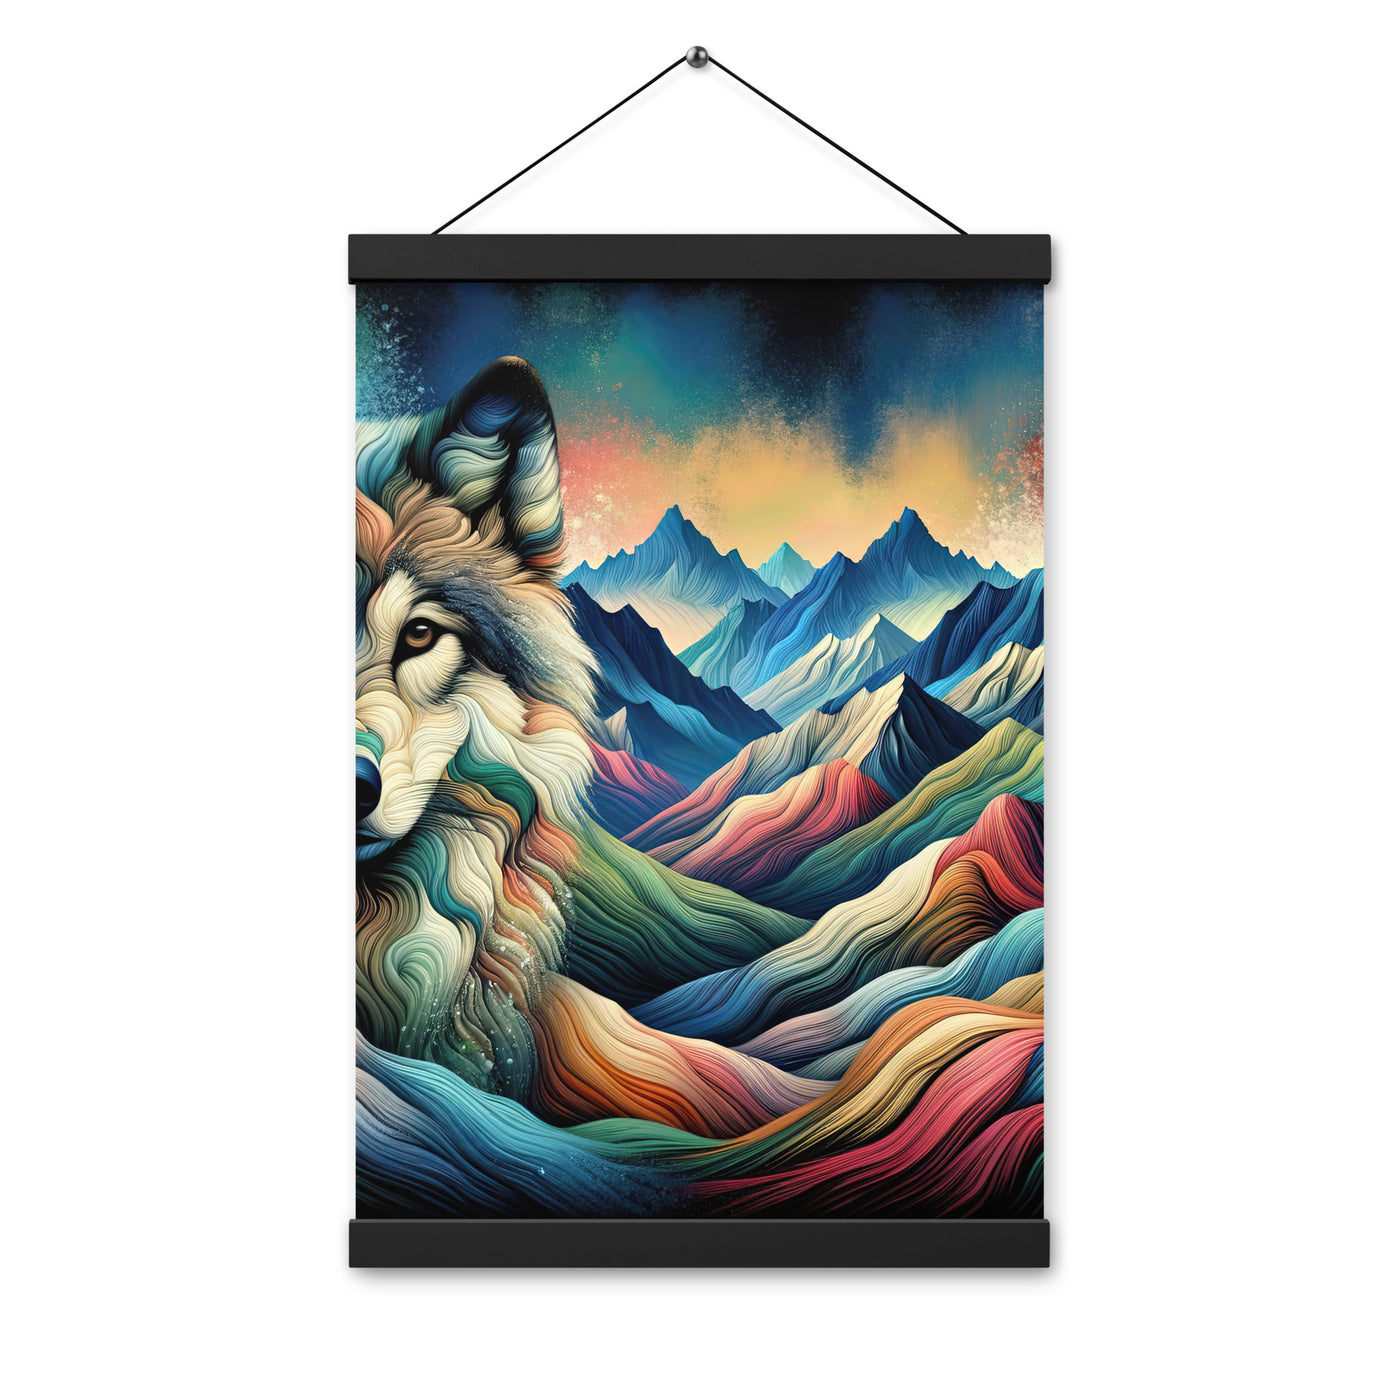 Traumhaftes Alpenpanorama mit Wolf in wechselnden Farben und Mustern (AN) - Premium Poster mit Aufhängung xxx yyy zzz 30.5 x 45.7 cm